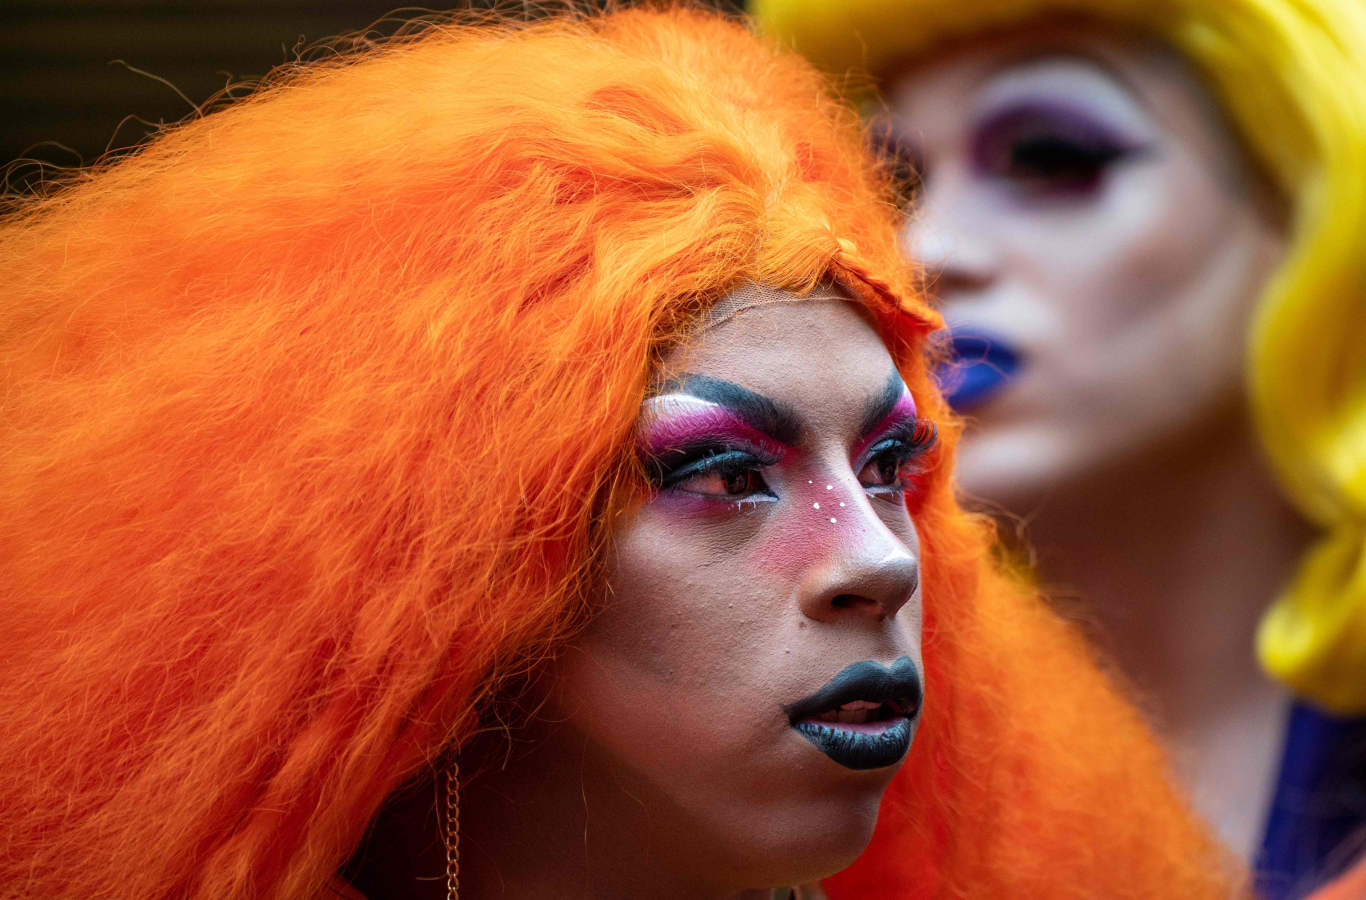 El Día Internacional del Orgullo LGBT se celebra anualmente de forma pública para instalar la igualdad de su colectivo. Esta fiesta tiene lugar el 28 de junio, día en el que se conmemoran los disturbios de Stonewall de 1969, que marcaron el inicio del movimiento de liberación homosexual. ​Estas 'drags' se preparan para festejar el Día del Orgullo en Sao Paulo. 